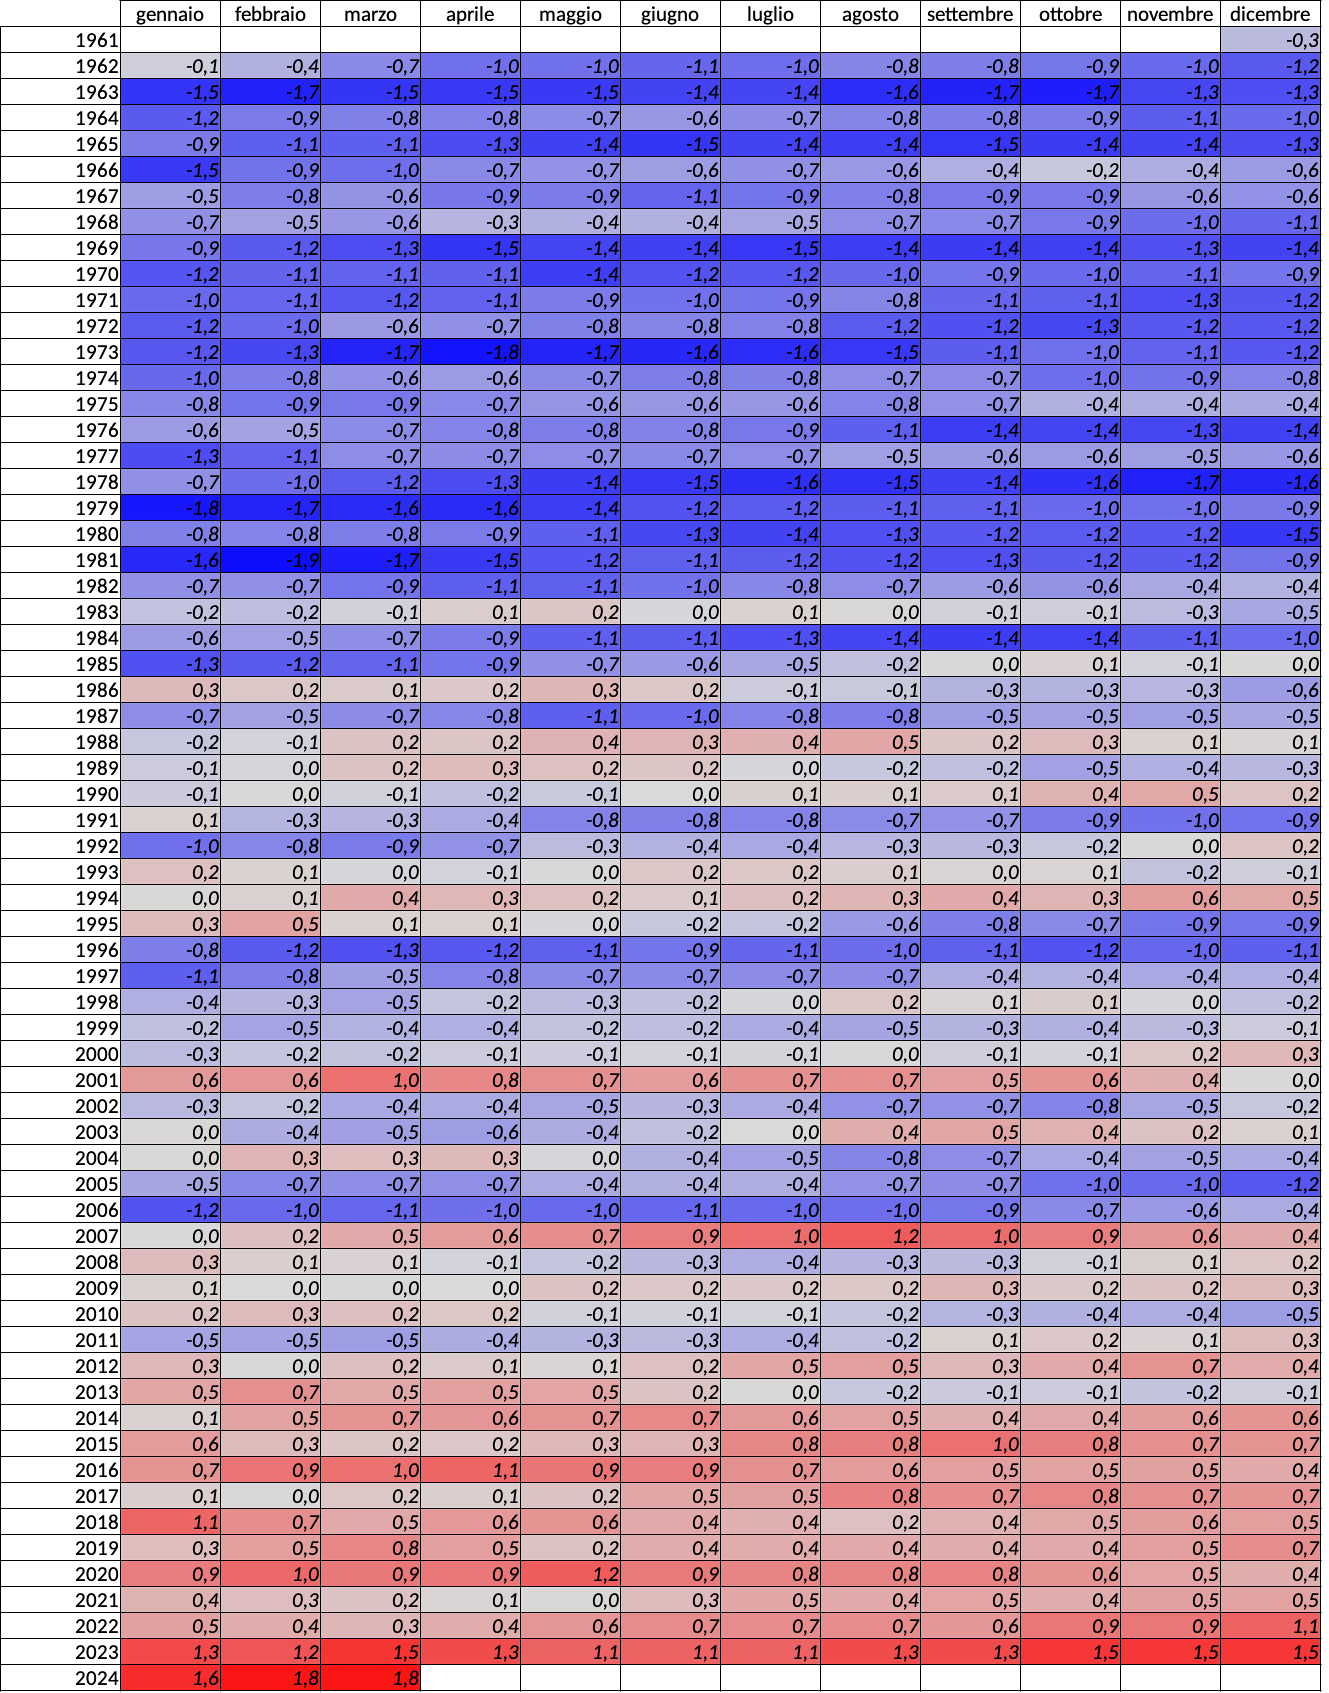 Meteo AMAP Regione Marche - tabella temperatura ultimi 12 mesi